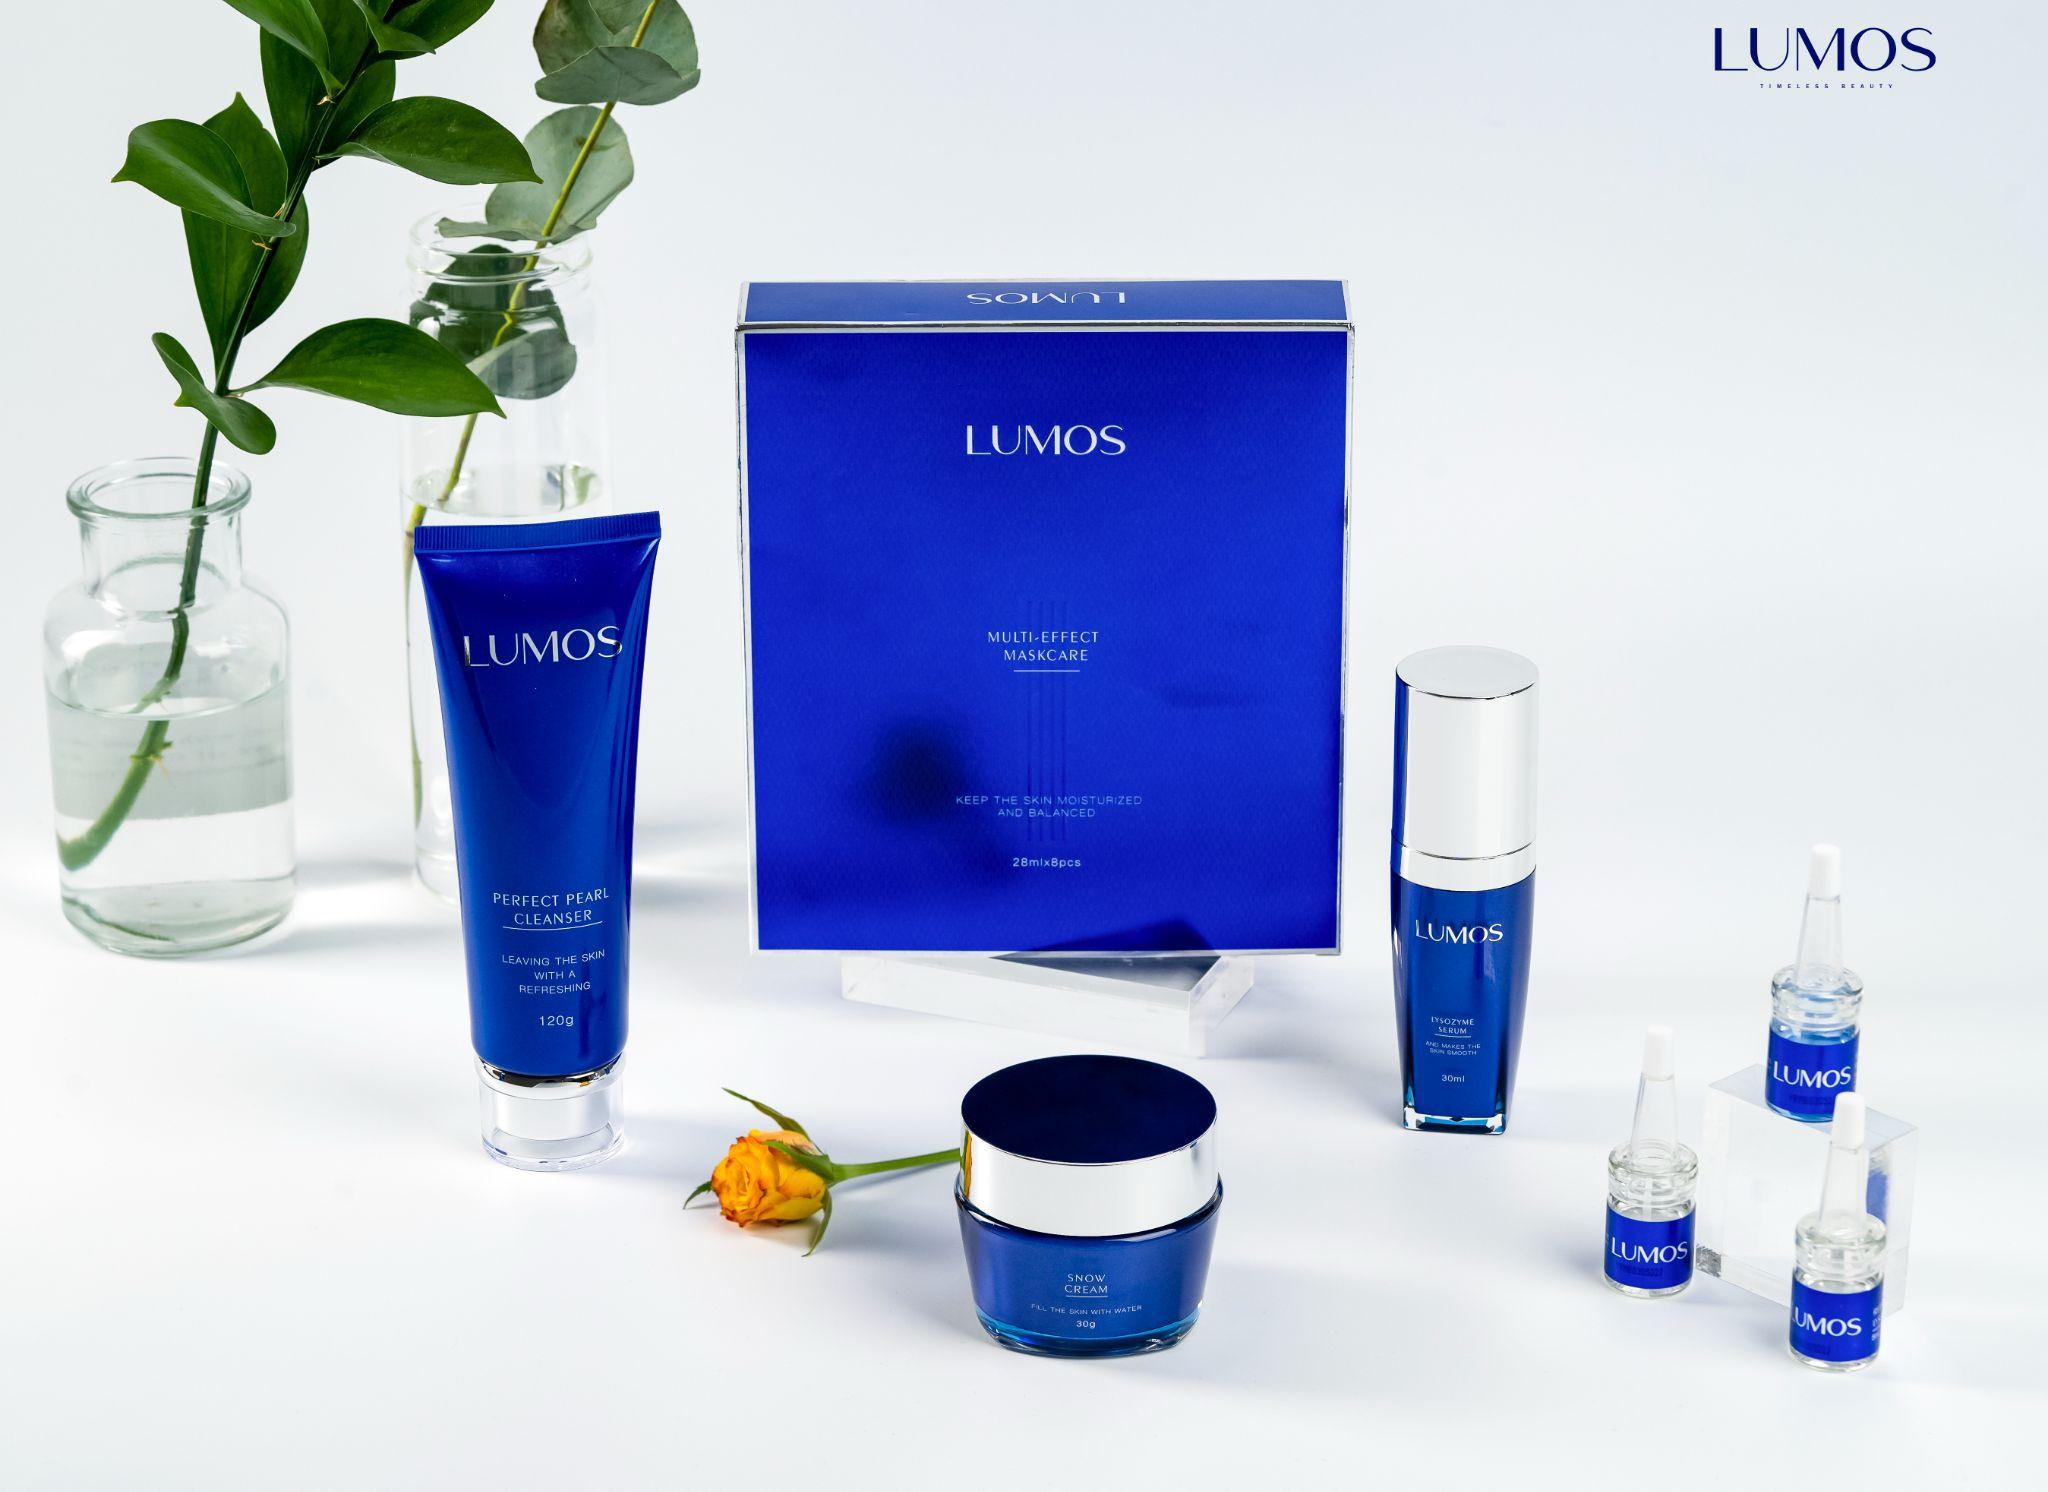 Năm dòng sản phẩm nổi bật nhà Lumos (Perfect Pearl Cleanser, Multi Effect Maskcare, Snow Cream, Lysozyme Serum và Vita Serum).